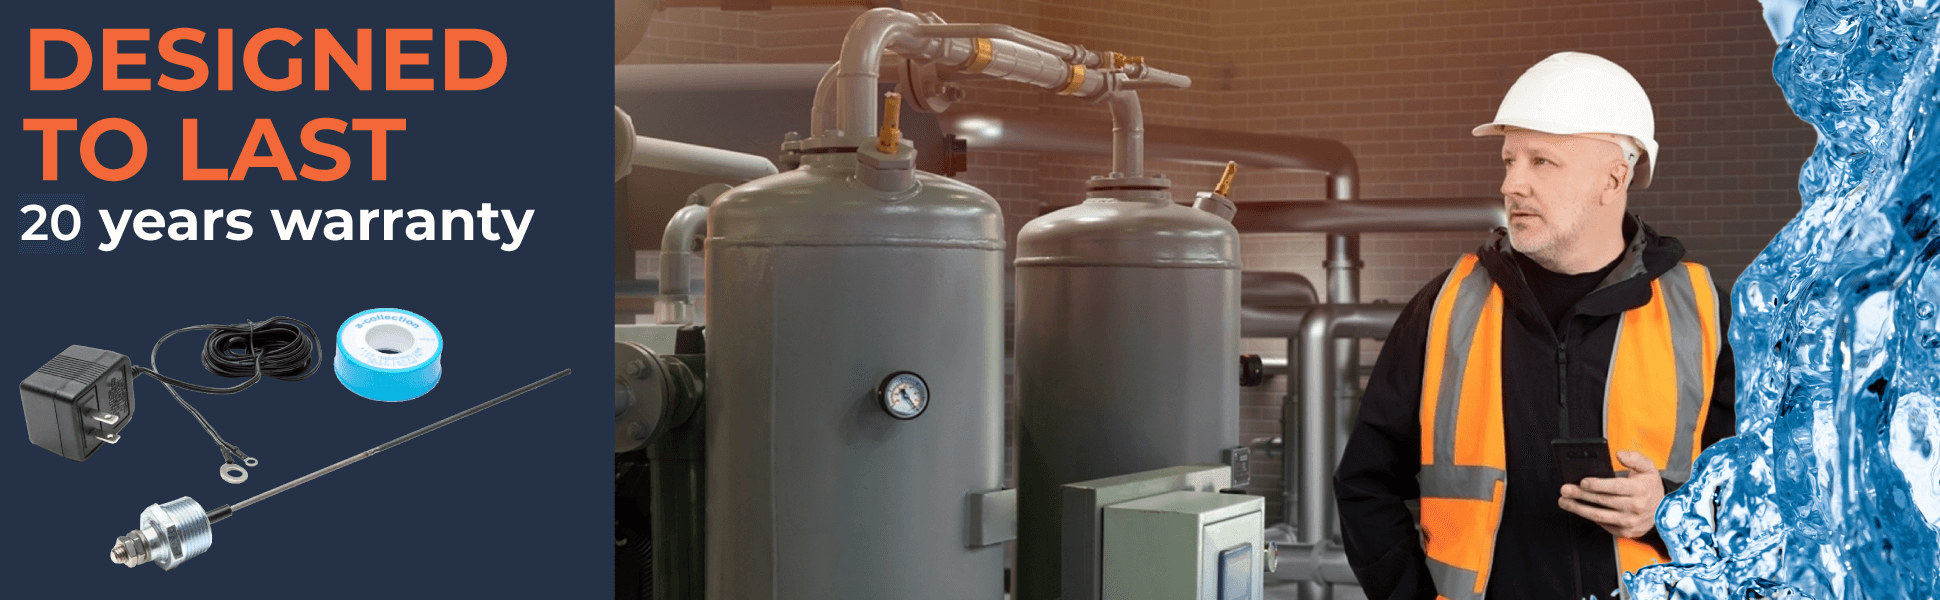 Corrosion Guard - Asta di anodo alimentato universale per scaldabagni, 40-89 gallons, si adatta a qualsiasi marchio - Adattatore US